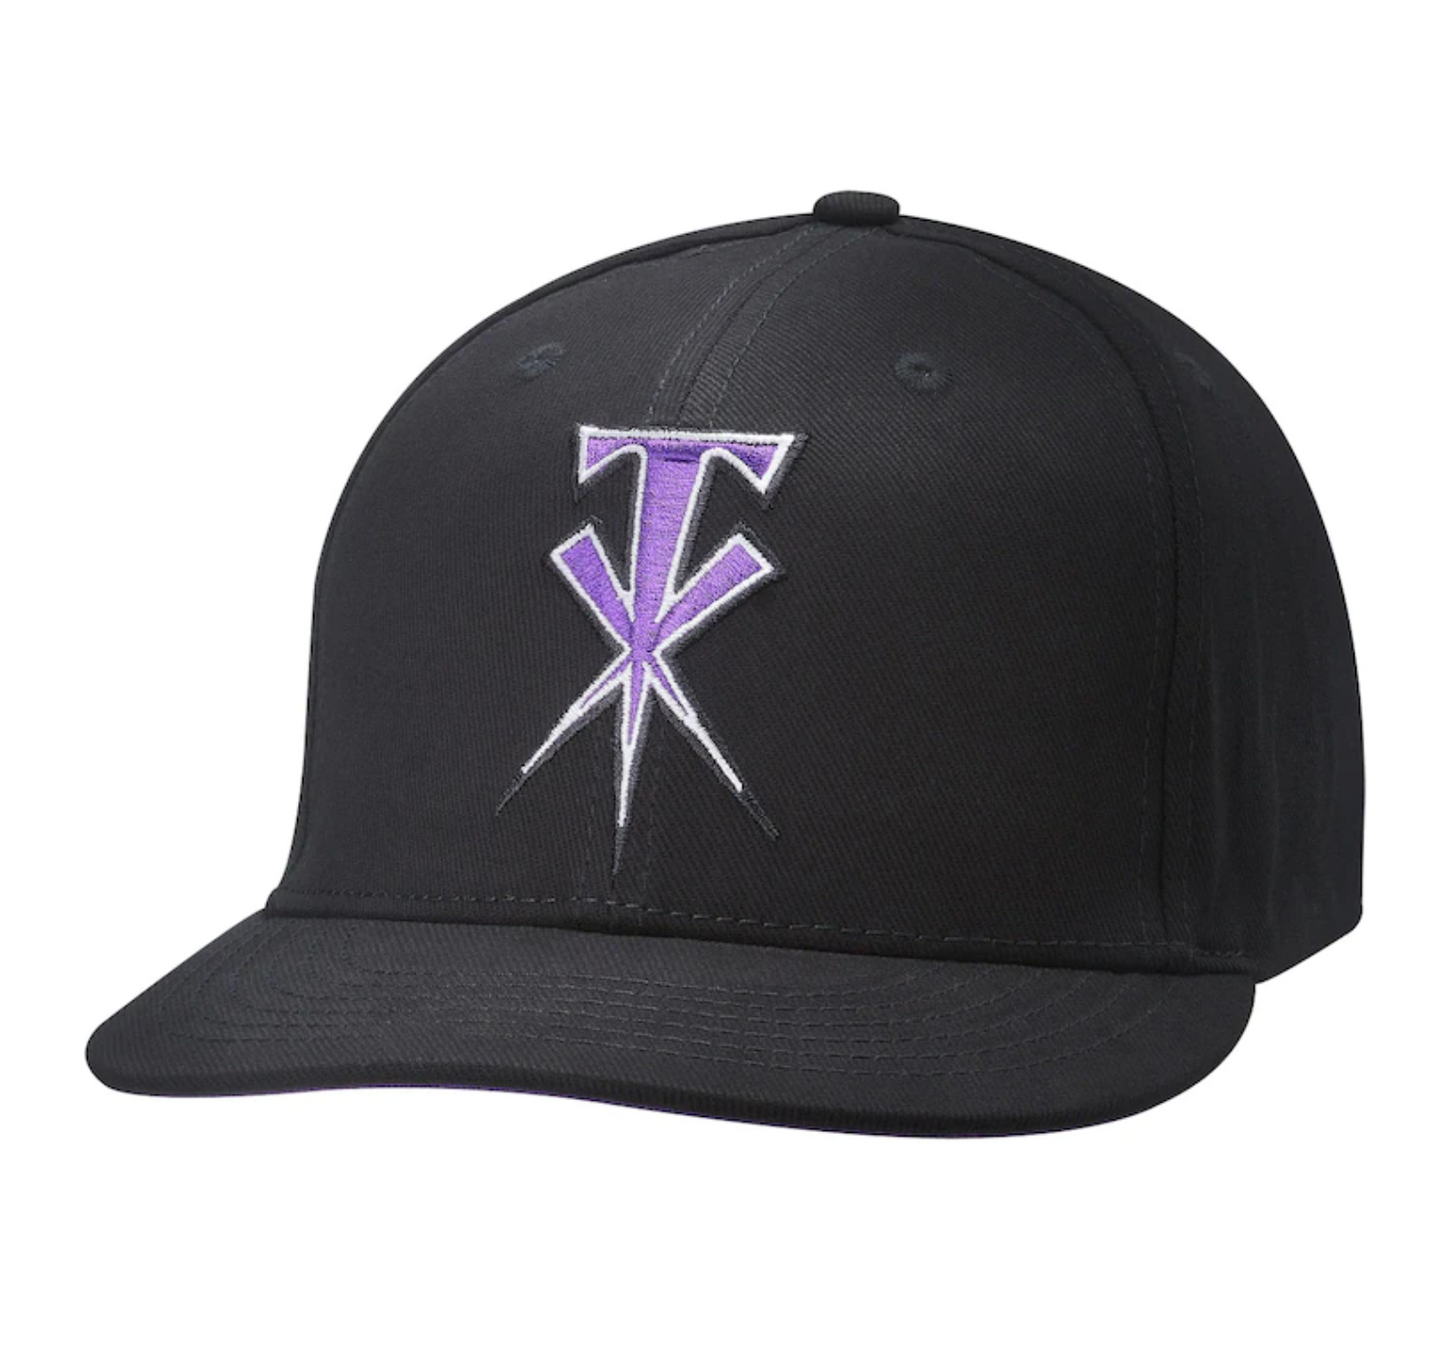 WWE Black The Undertaker Cross Snapback Hat